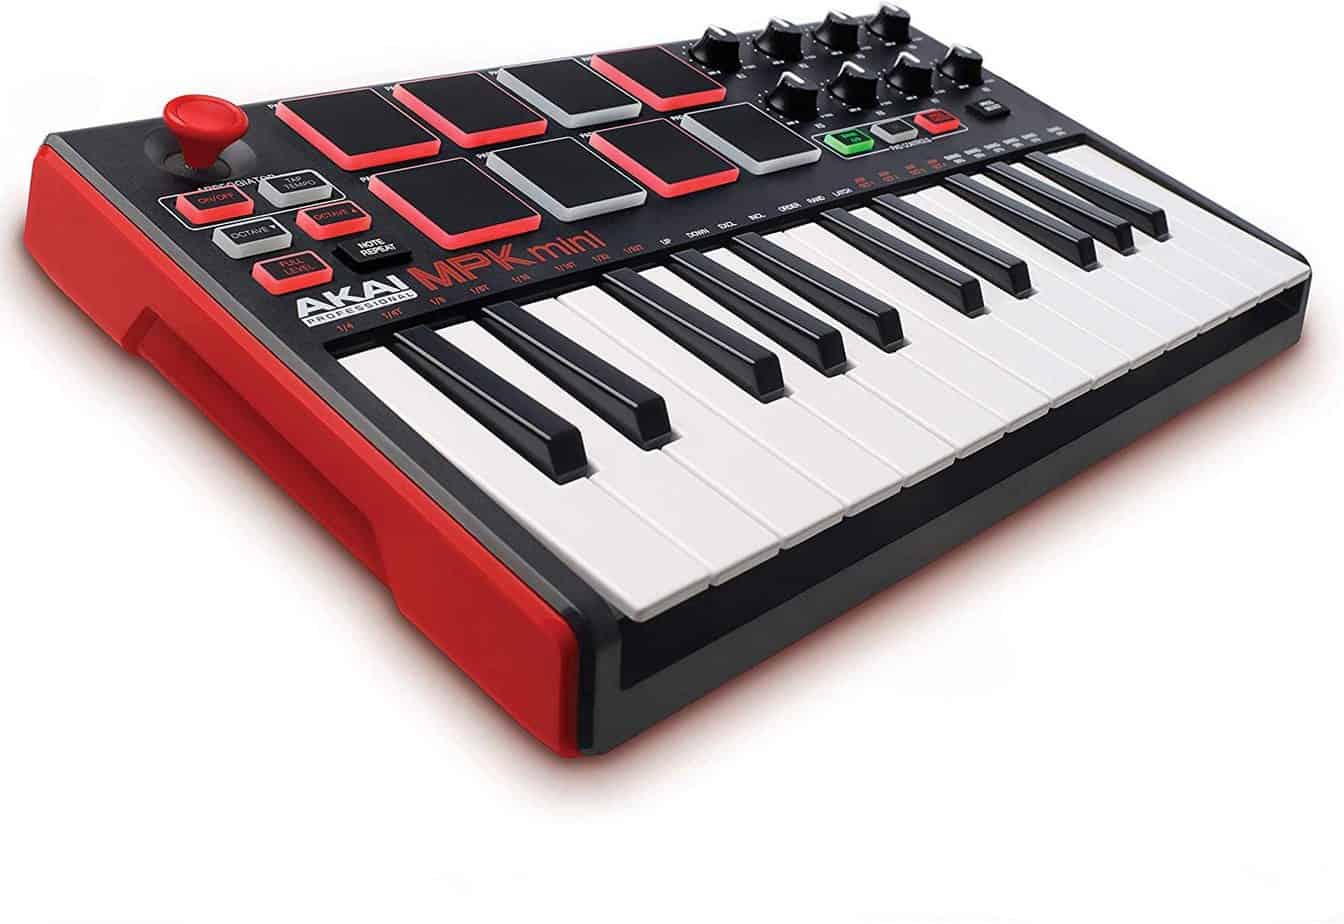  Akai Professional MPK Mini MK11 25 MIDI Keyboard - best cheap midi keyboards